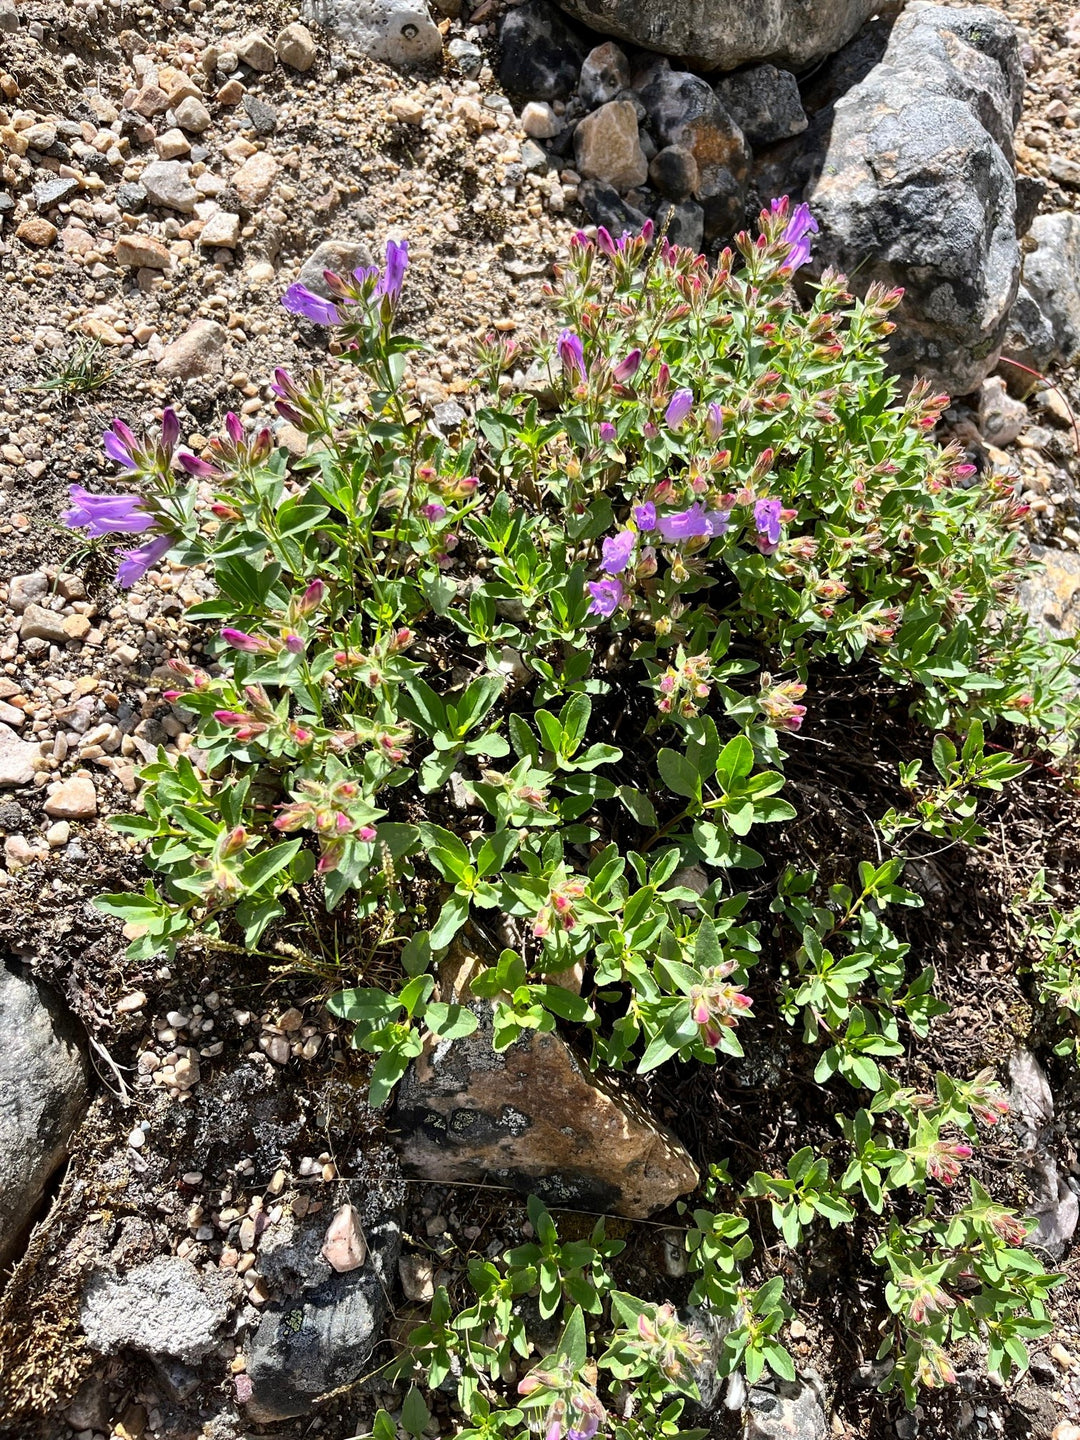 Penstemon fruticosus var. scouleri (littleleaf shrubby beardtongue), entire plant in bloom.